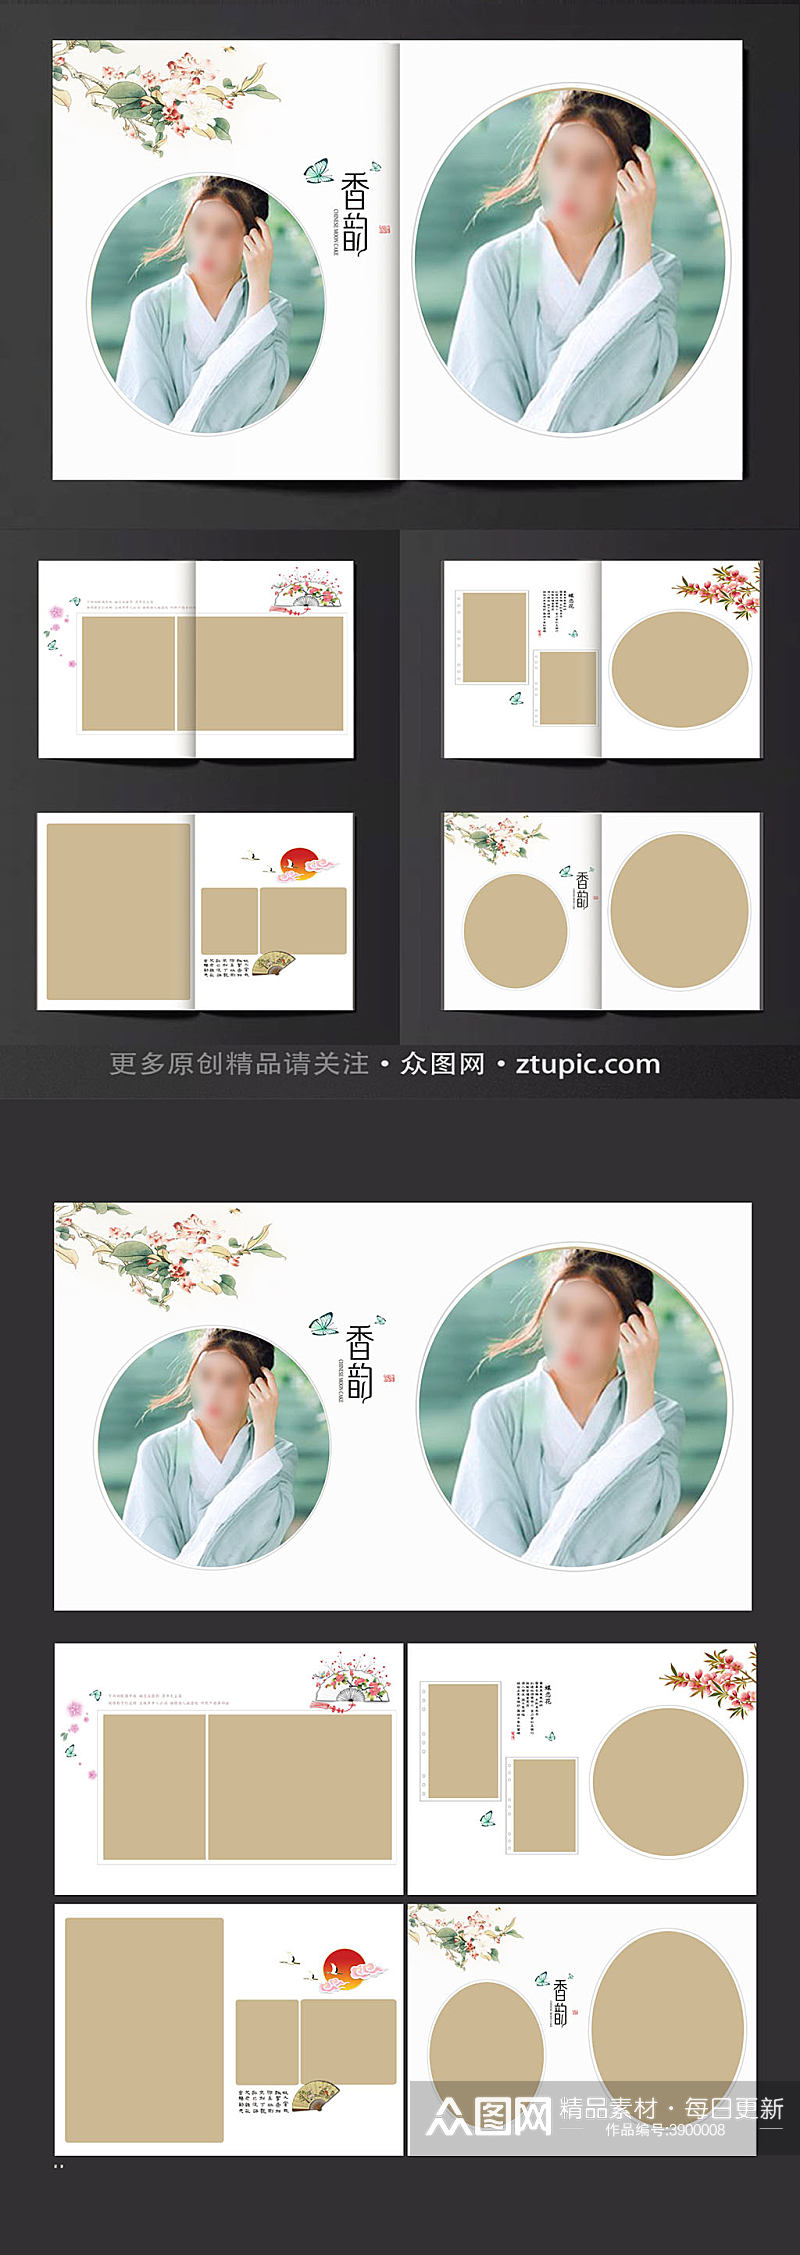 中式高端古典水墨婚纱相册模板素材